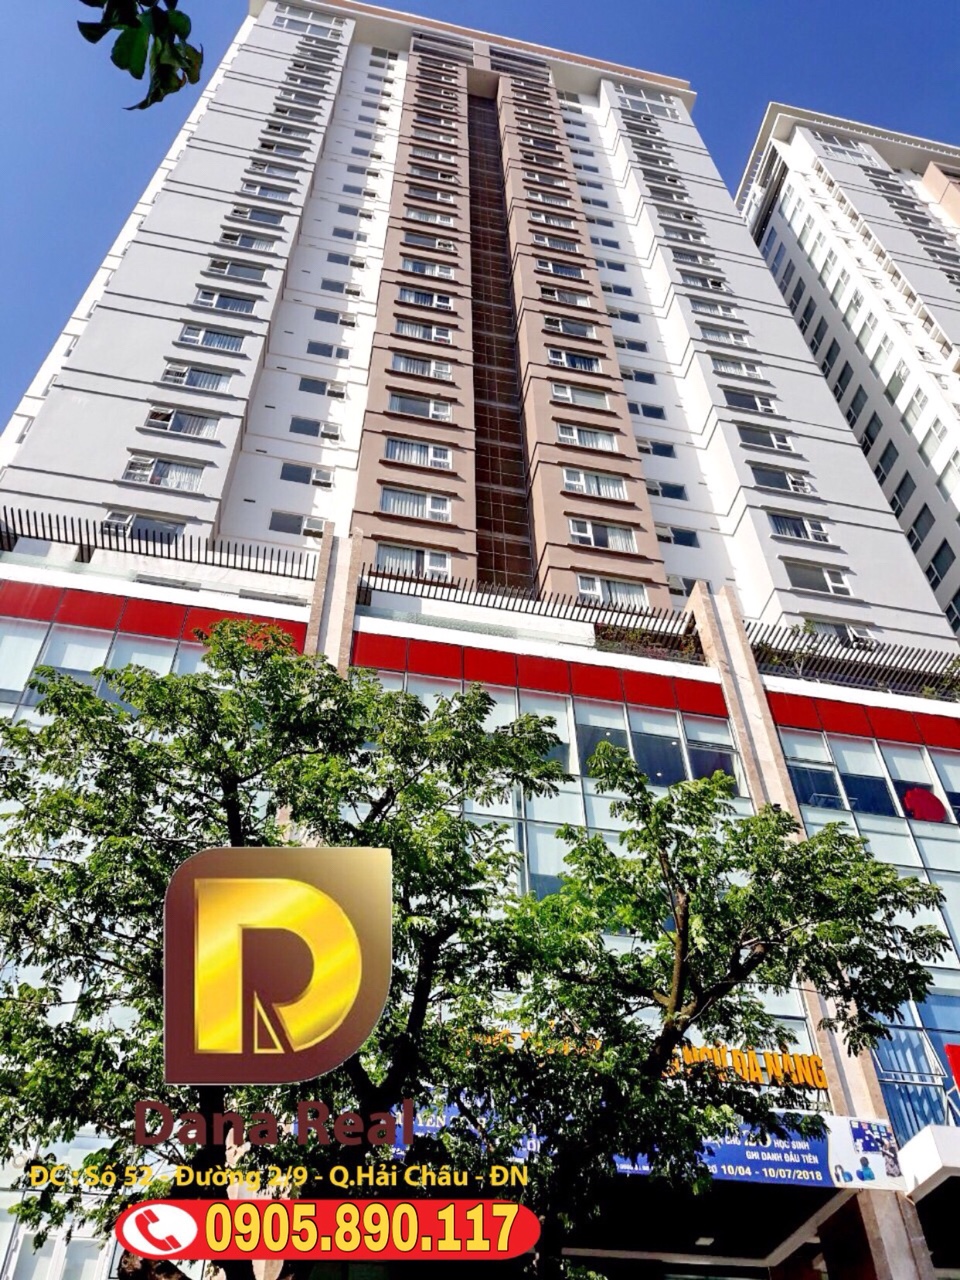 Bán căn hộ cao cấp penthouse tầng cao 27, view sông view biển cự đẹp, trung tâm TP Đà Nẵng